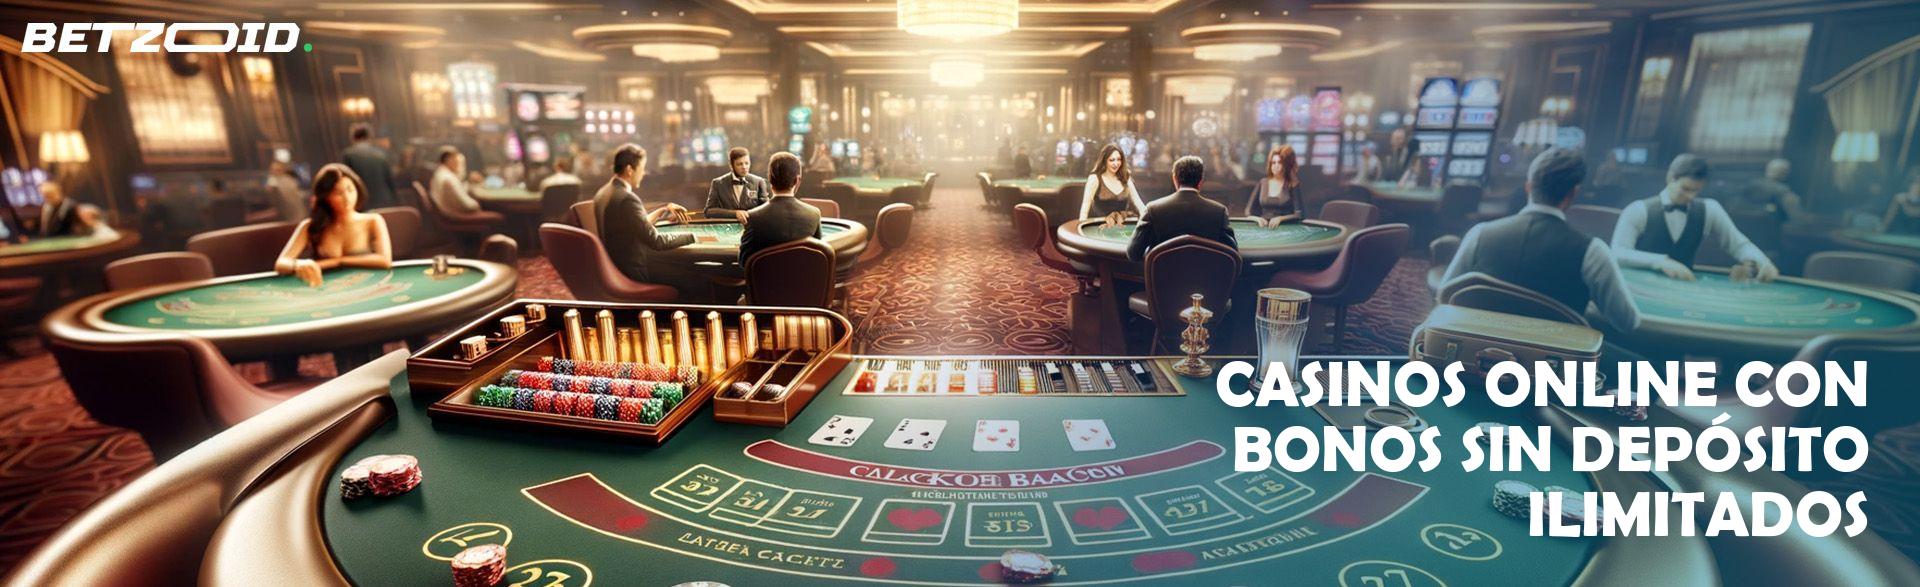 Casinos online con bonos